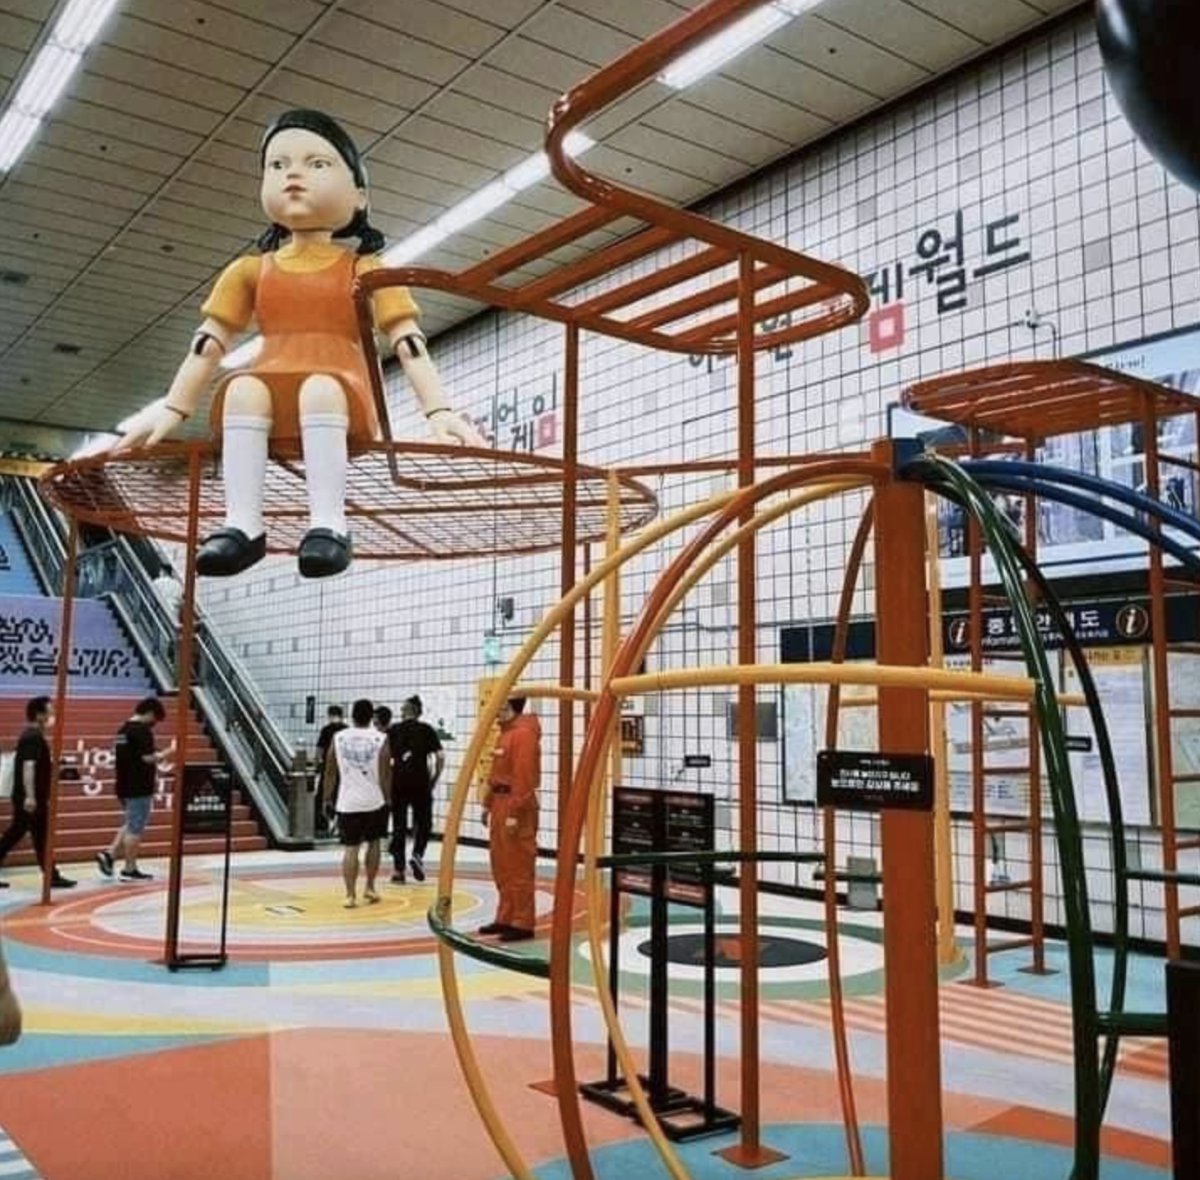 Estación del metro en Corea recrea escenario de "El Juego del Calamar"